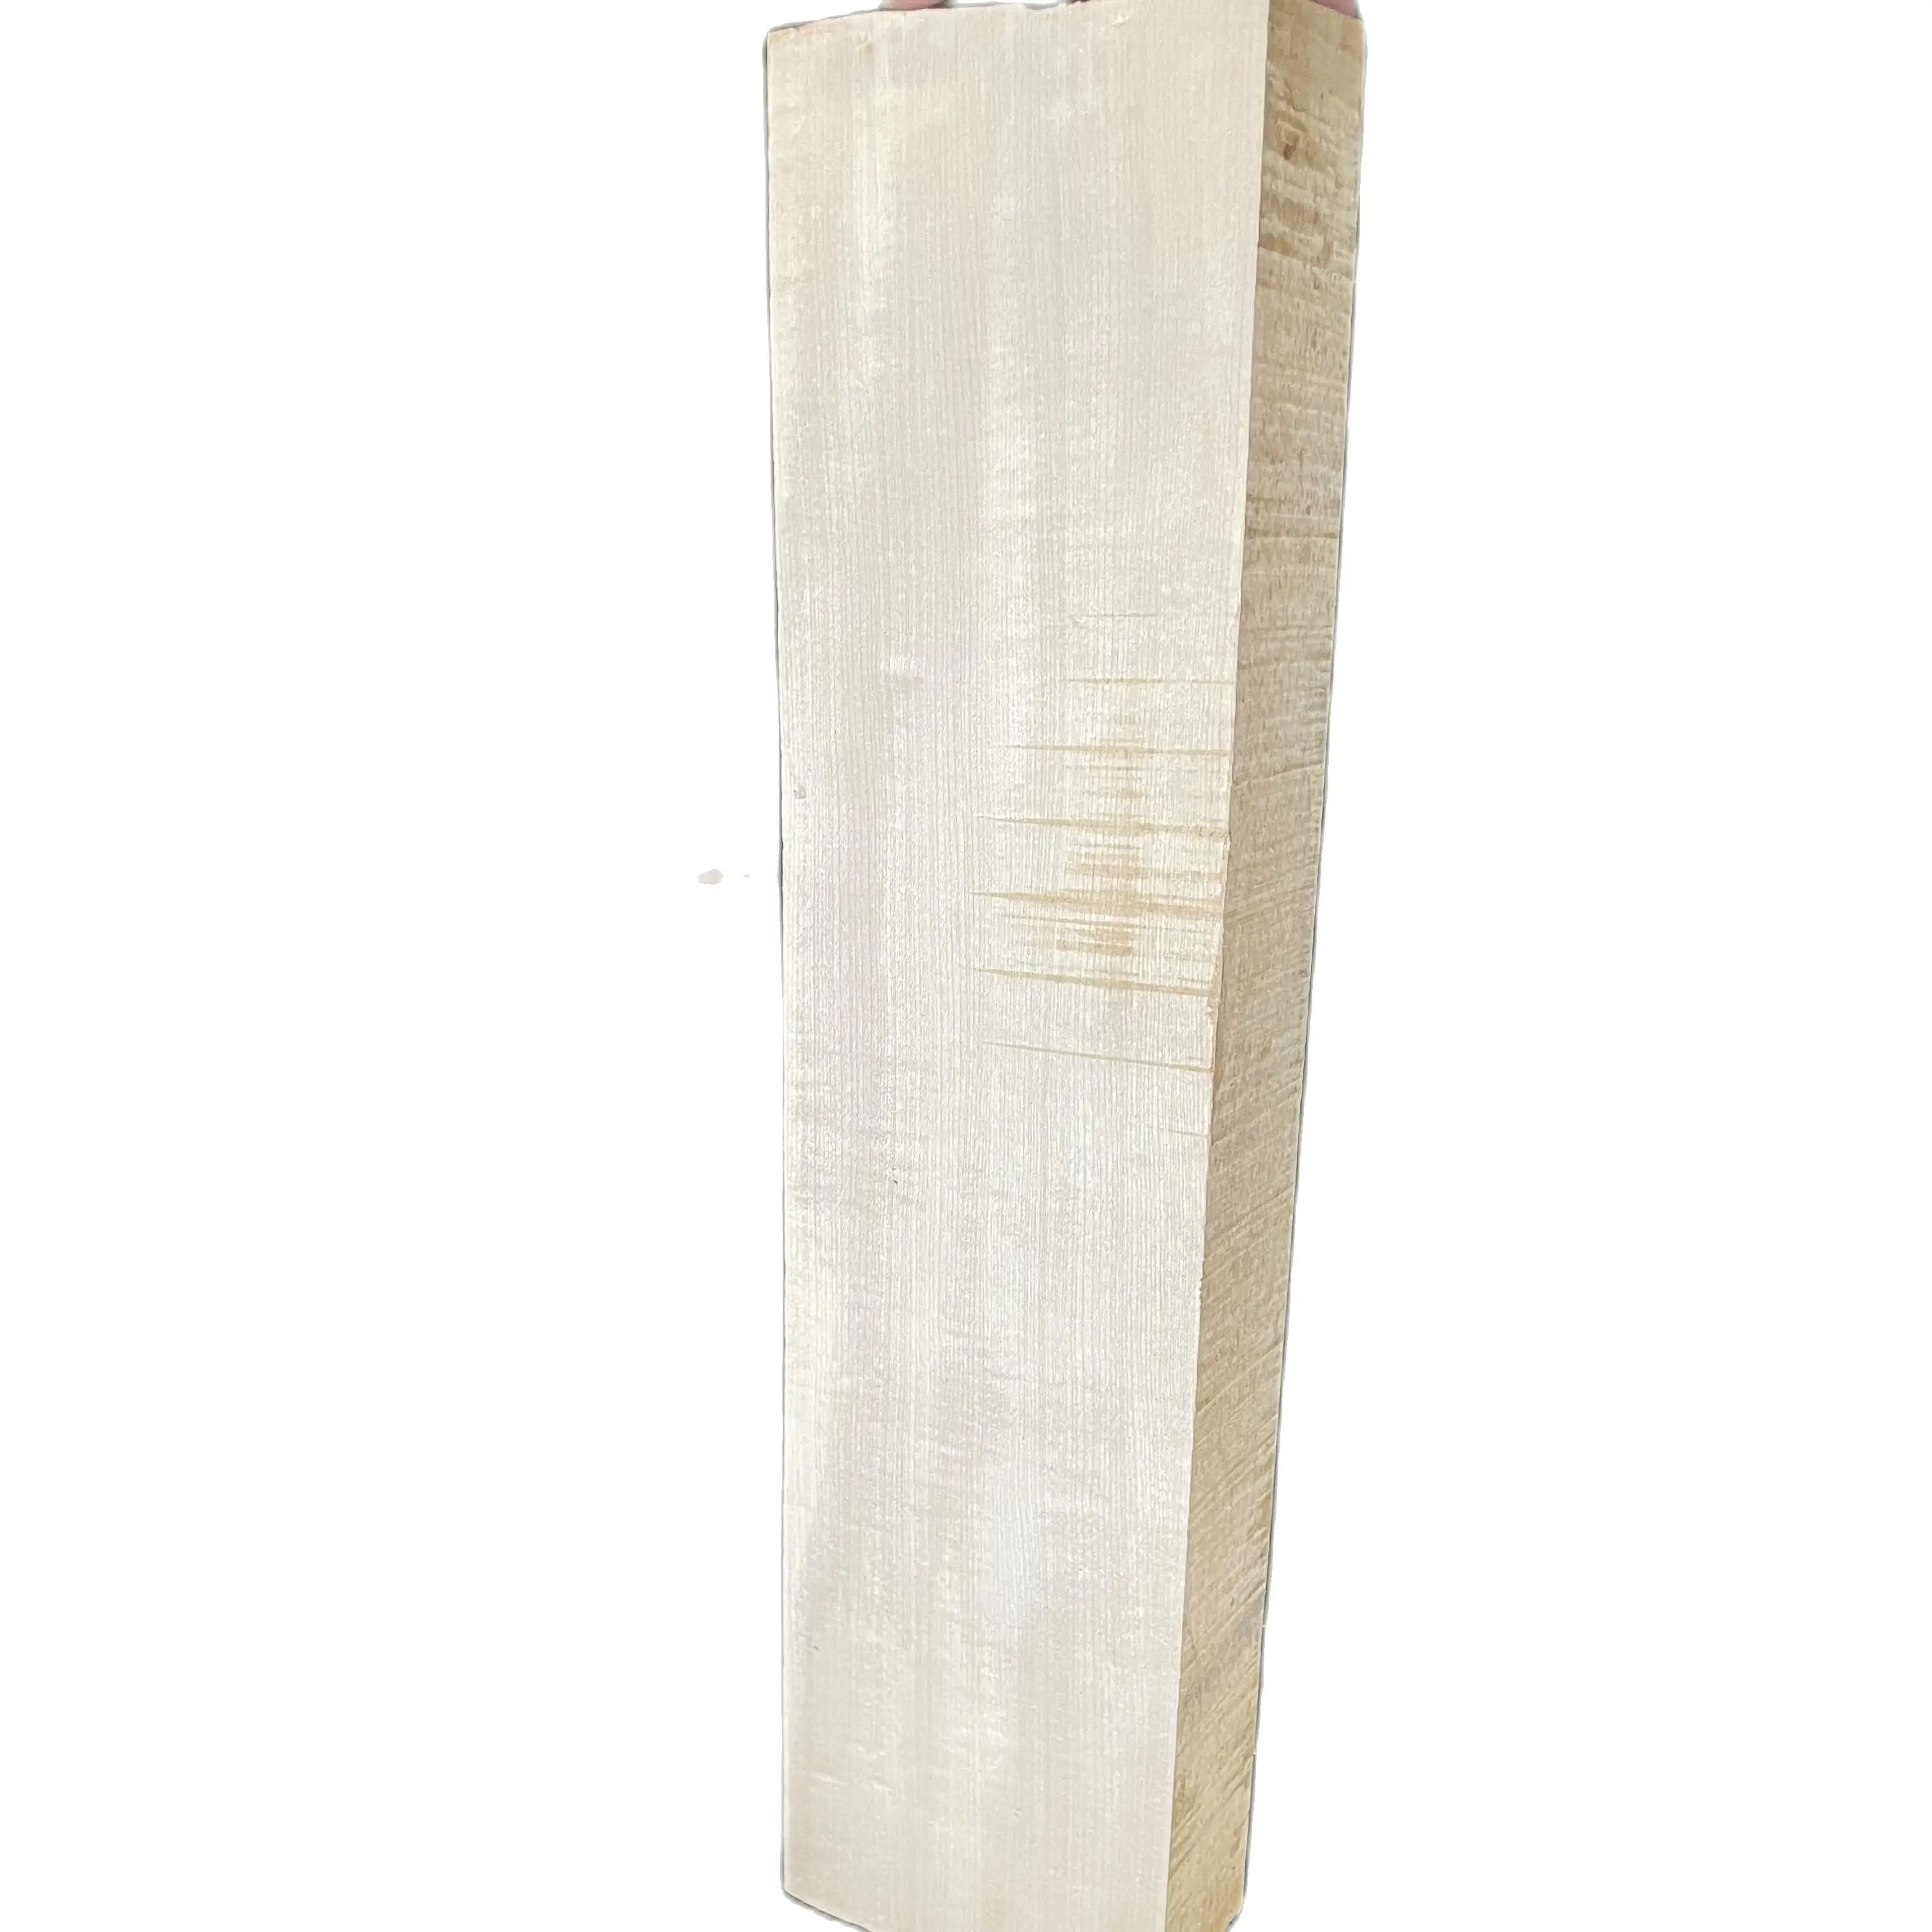 1 pieza de tablero de madera de Arce Europeo para 2 piezas de Material de Luthier para cuello de Violonchelo